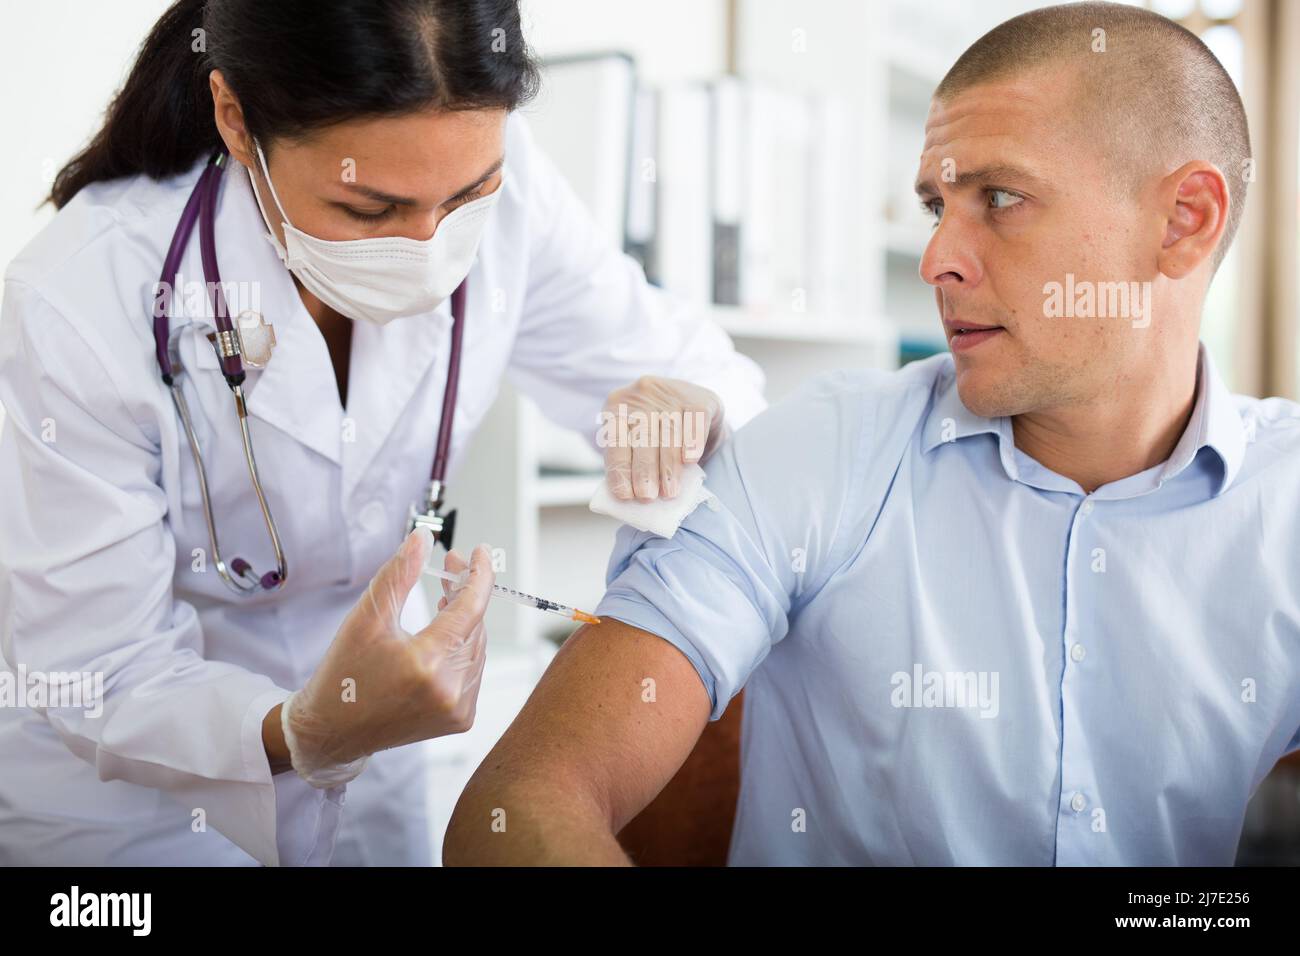 Medico in maschera che dà il vaccino al pacient in ufficio Foto Stock